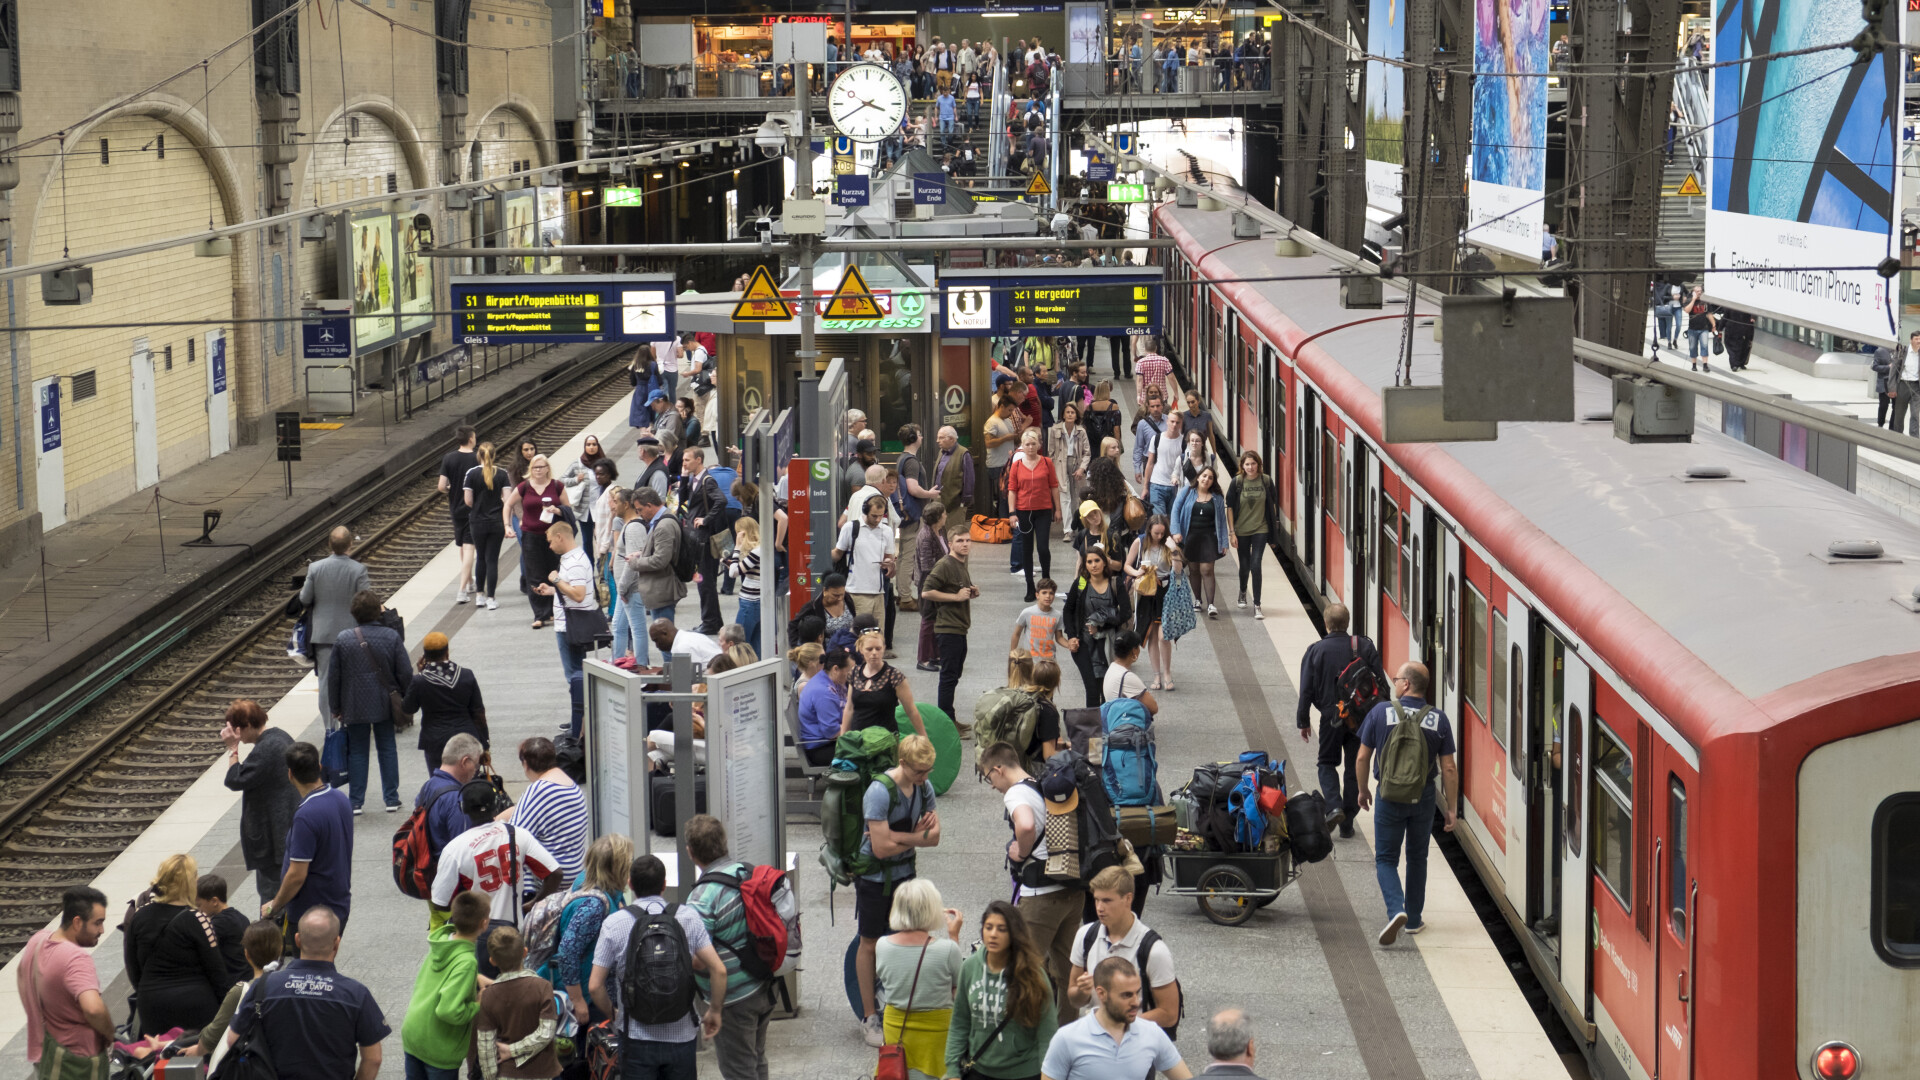 Germania încheie experimentul cu bilete ieftine de transport în comun. Până și nemții se plâng de condițiile din trenuri